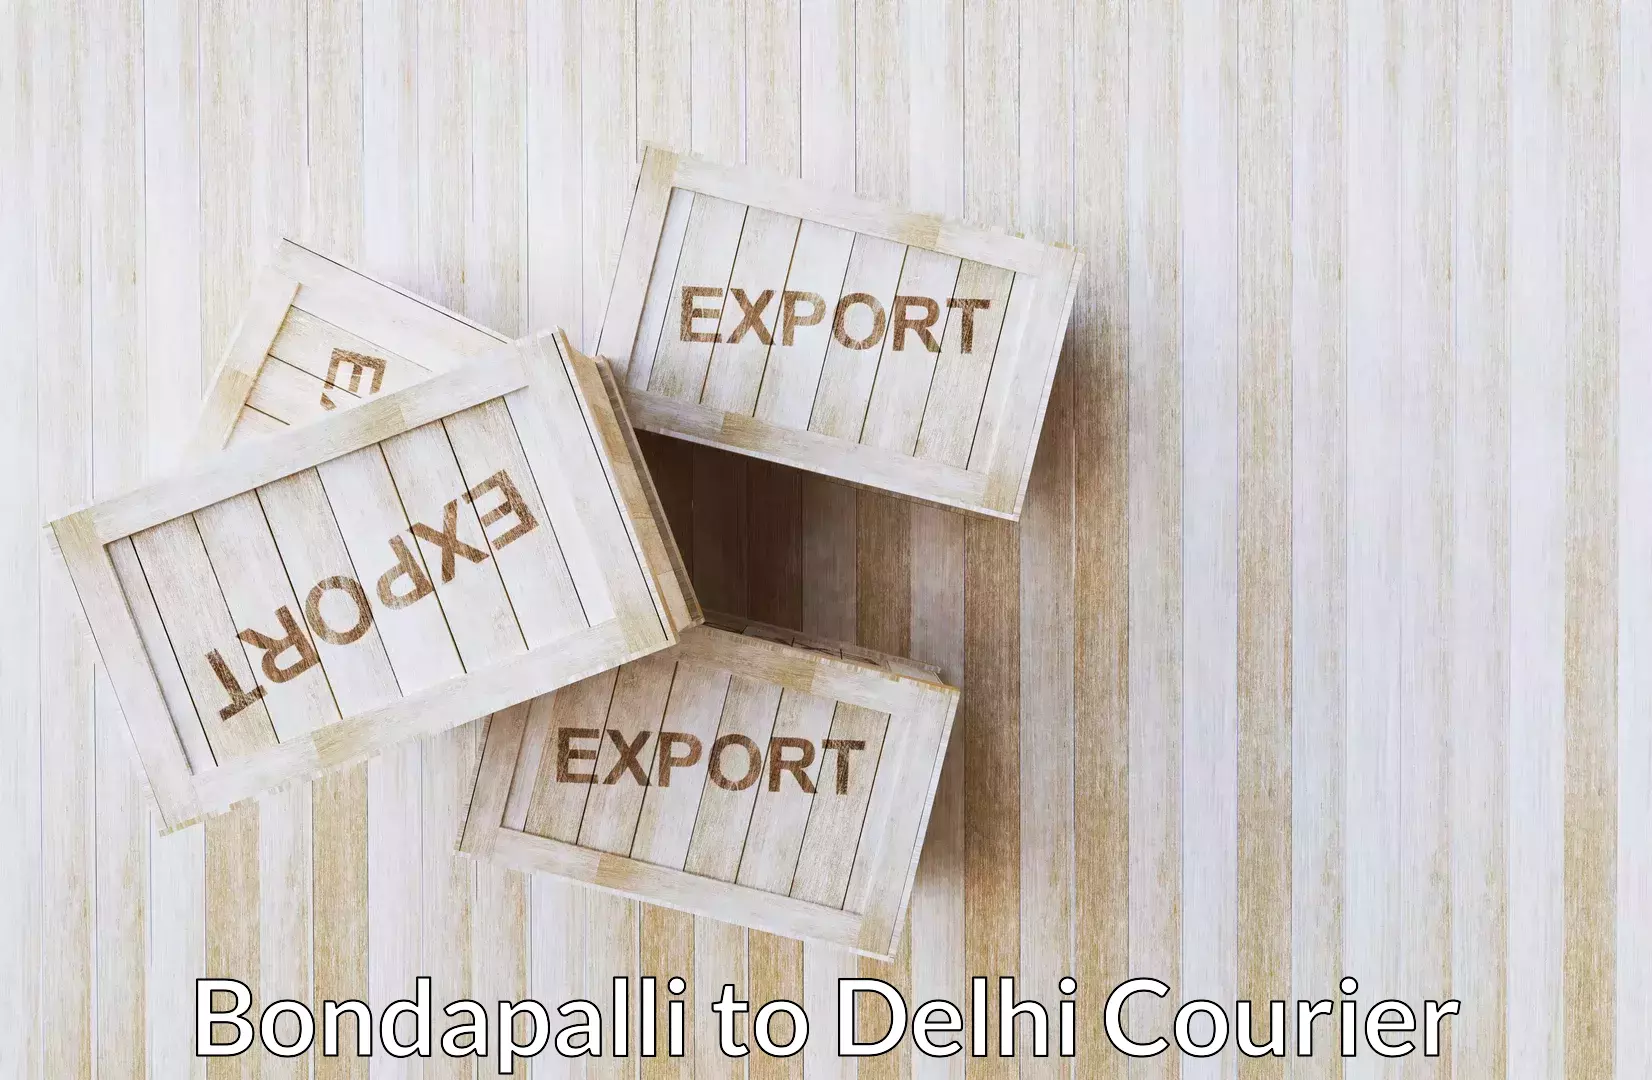 Household goods transport service Bondapalli to East Delhi